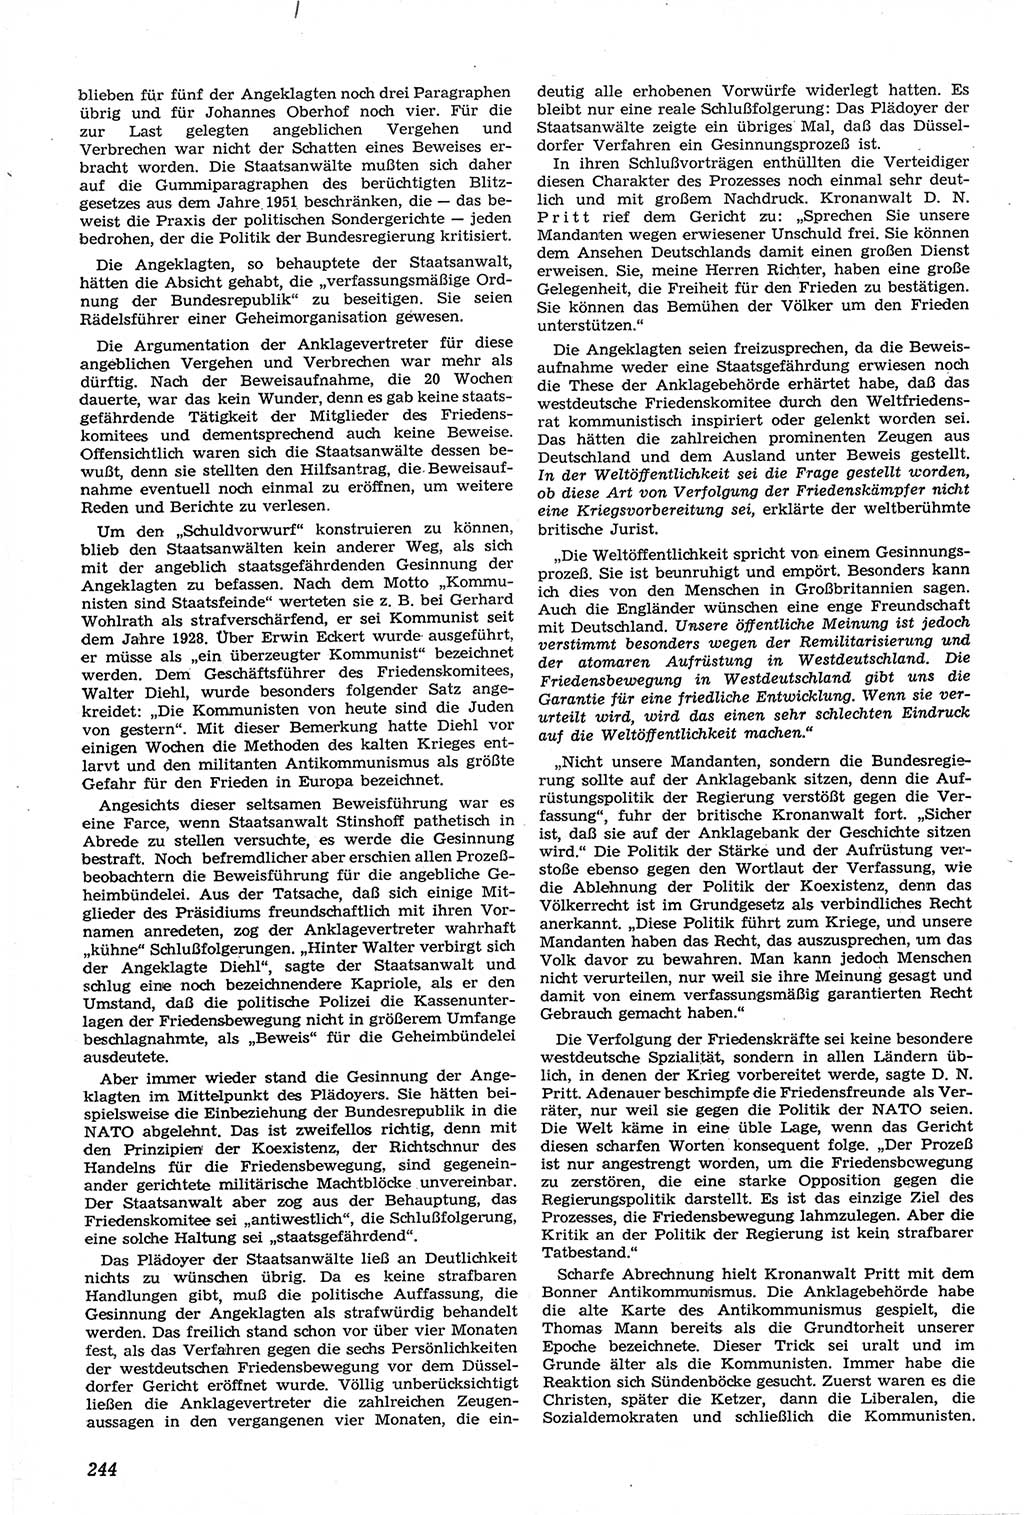 Neue Justiz (NJ), Zeitschrift für Recht und Rechtswissenschaft [Deutsche Demokratische Republik (DDR)], 14. Jahrgang 1960, Seite 244 (NJ DDR 1960, S. 244)